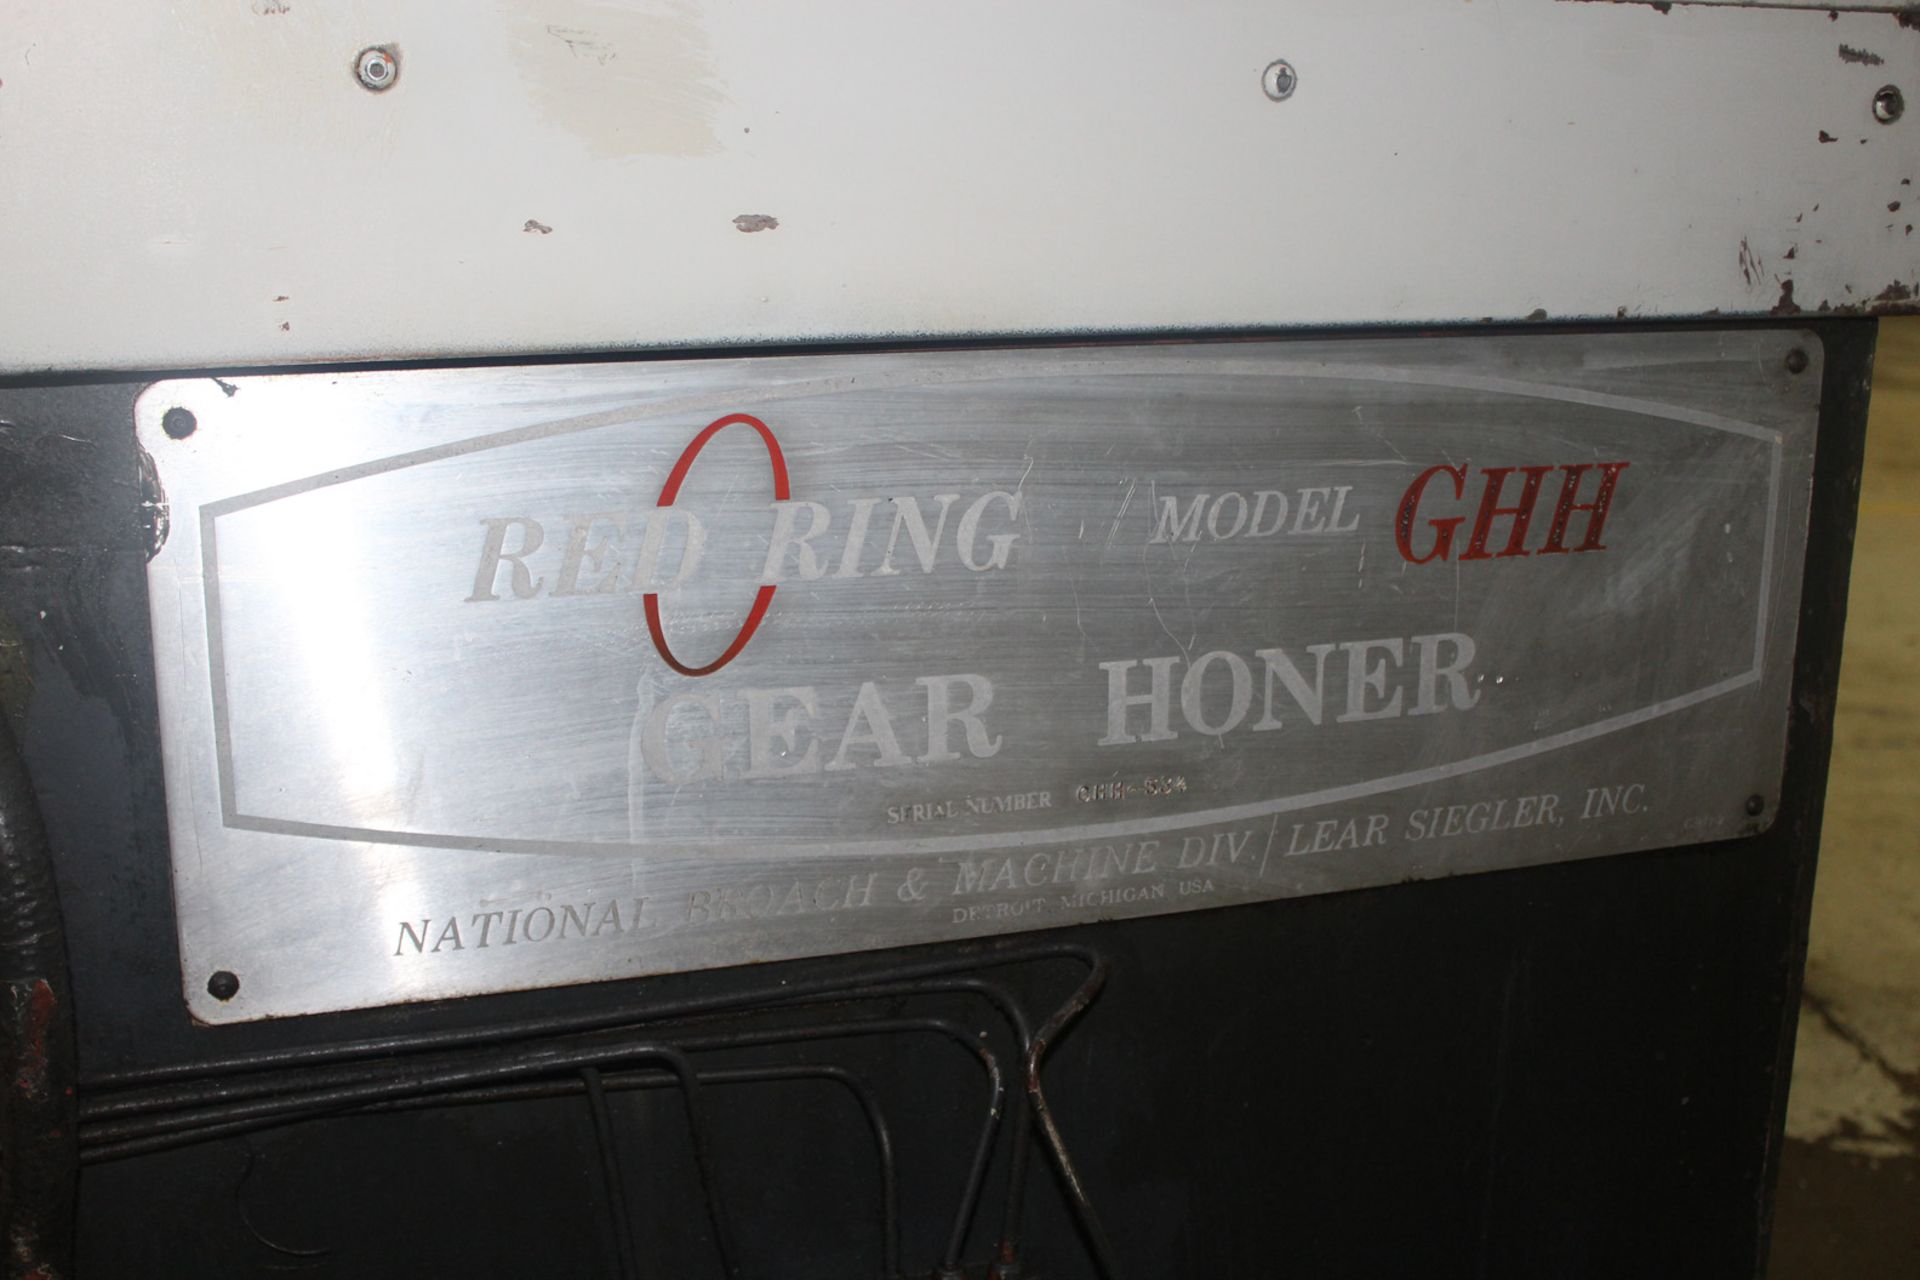 RED RING MODEL GHH-12 GEAR HONER, S/N 634 - Image 19 of 19